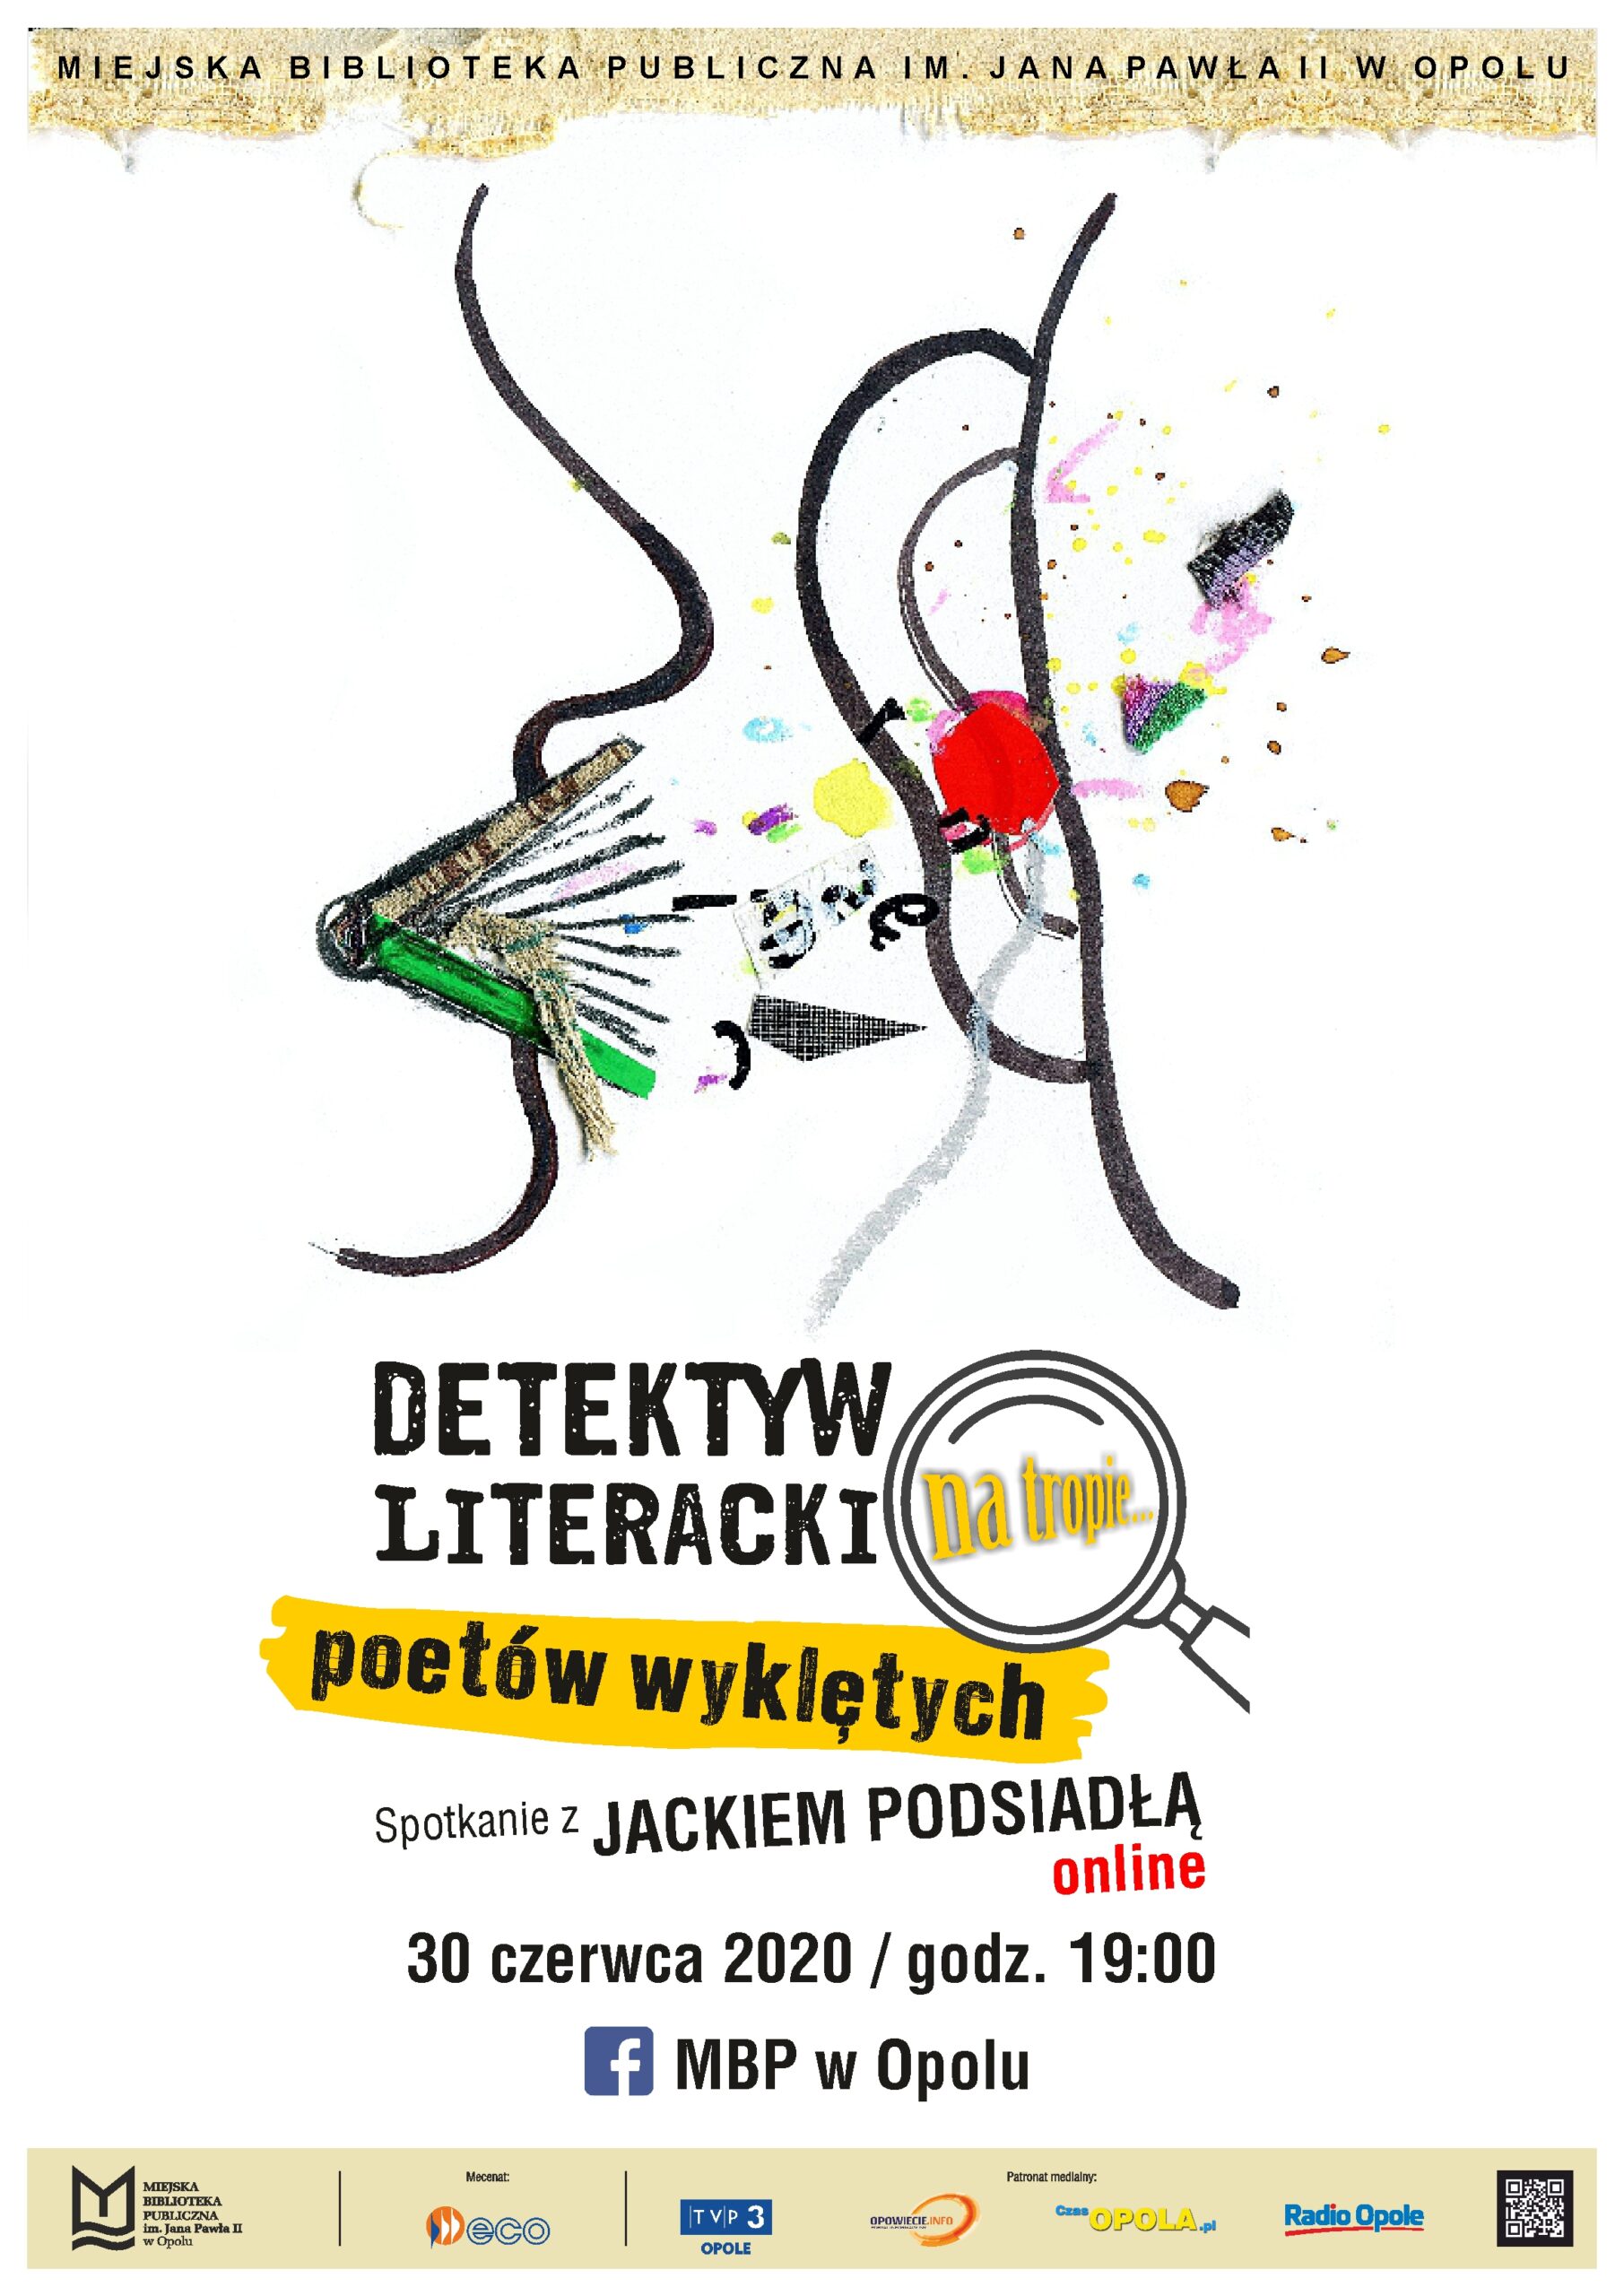 DETEKTYW LITERACKI na tropie poetów wyklętych – spotkanie z Jackiem Podsiadłą online